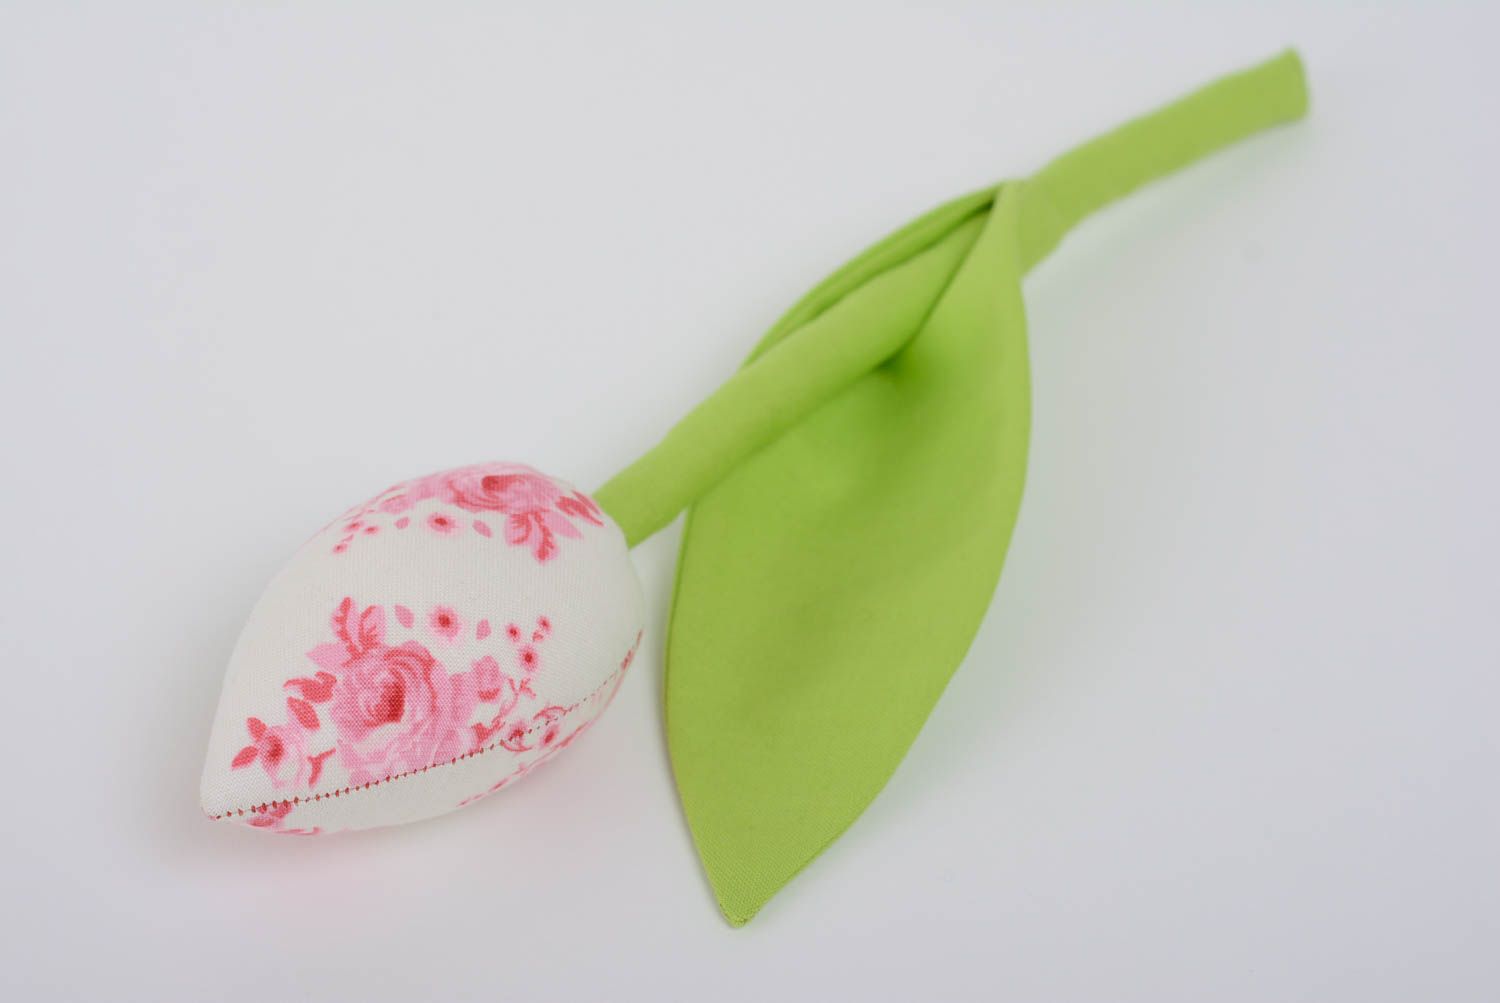 Текстильный тюльпан из хлопка на гибкой ножке для декора или фотосессии хенд мэйд фото 1